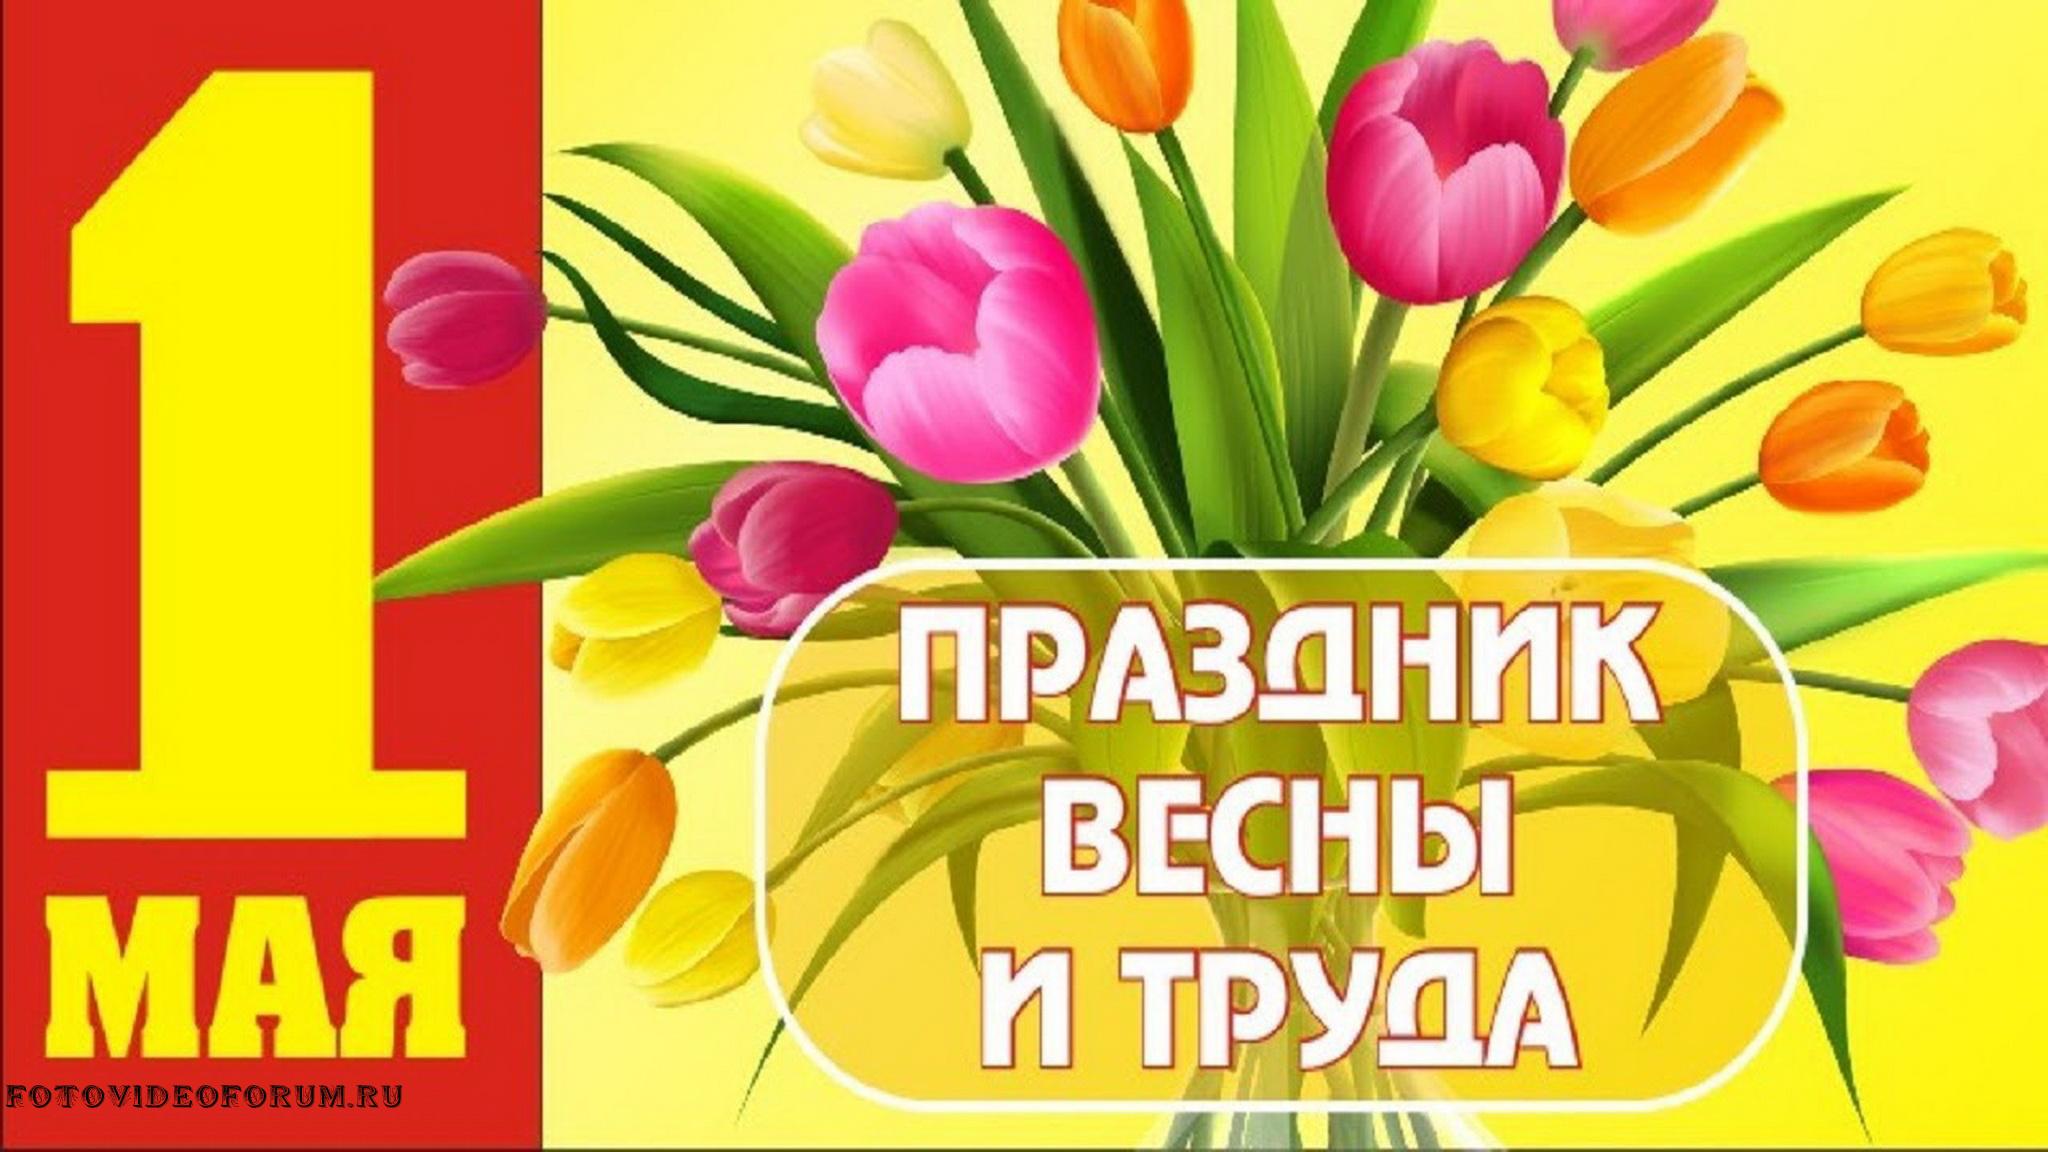 1 мая оплата. Поздравление с 1 мая. Открытки с 1 мая. 1 Мая праздник весны и труда. Поздравления с первым мая.